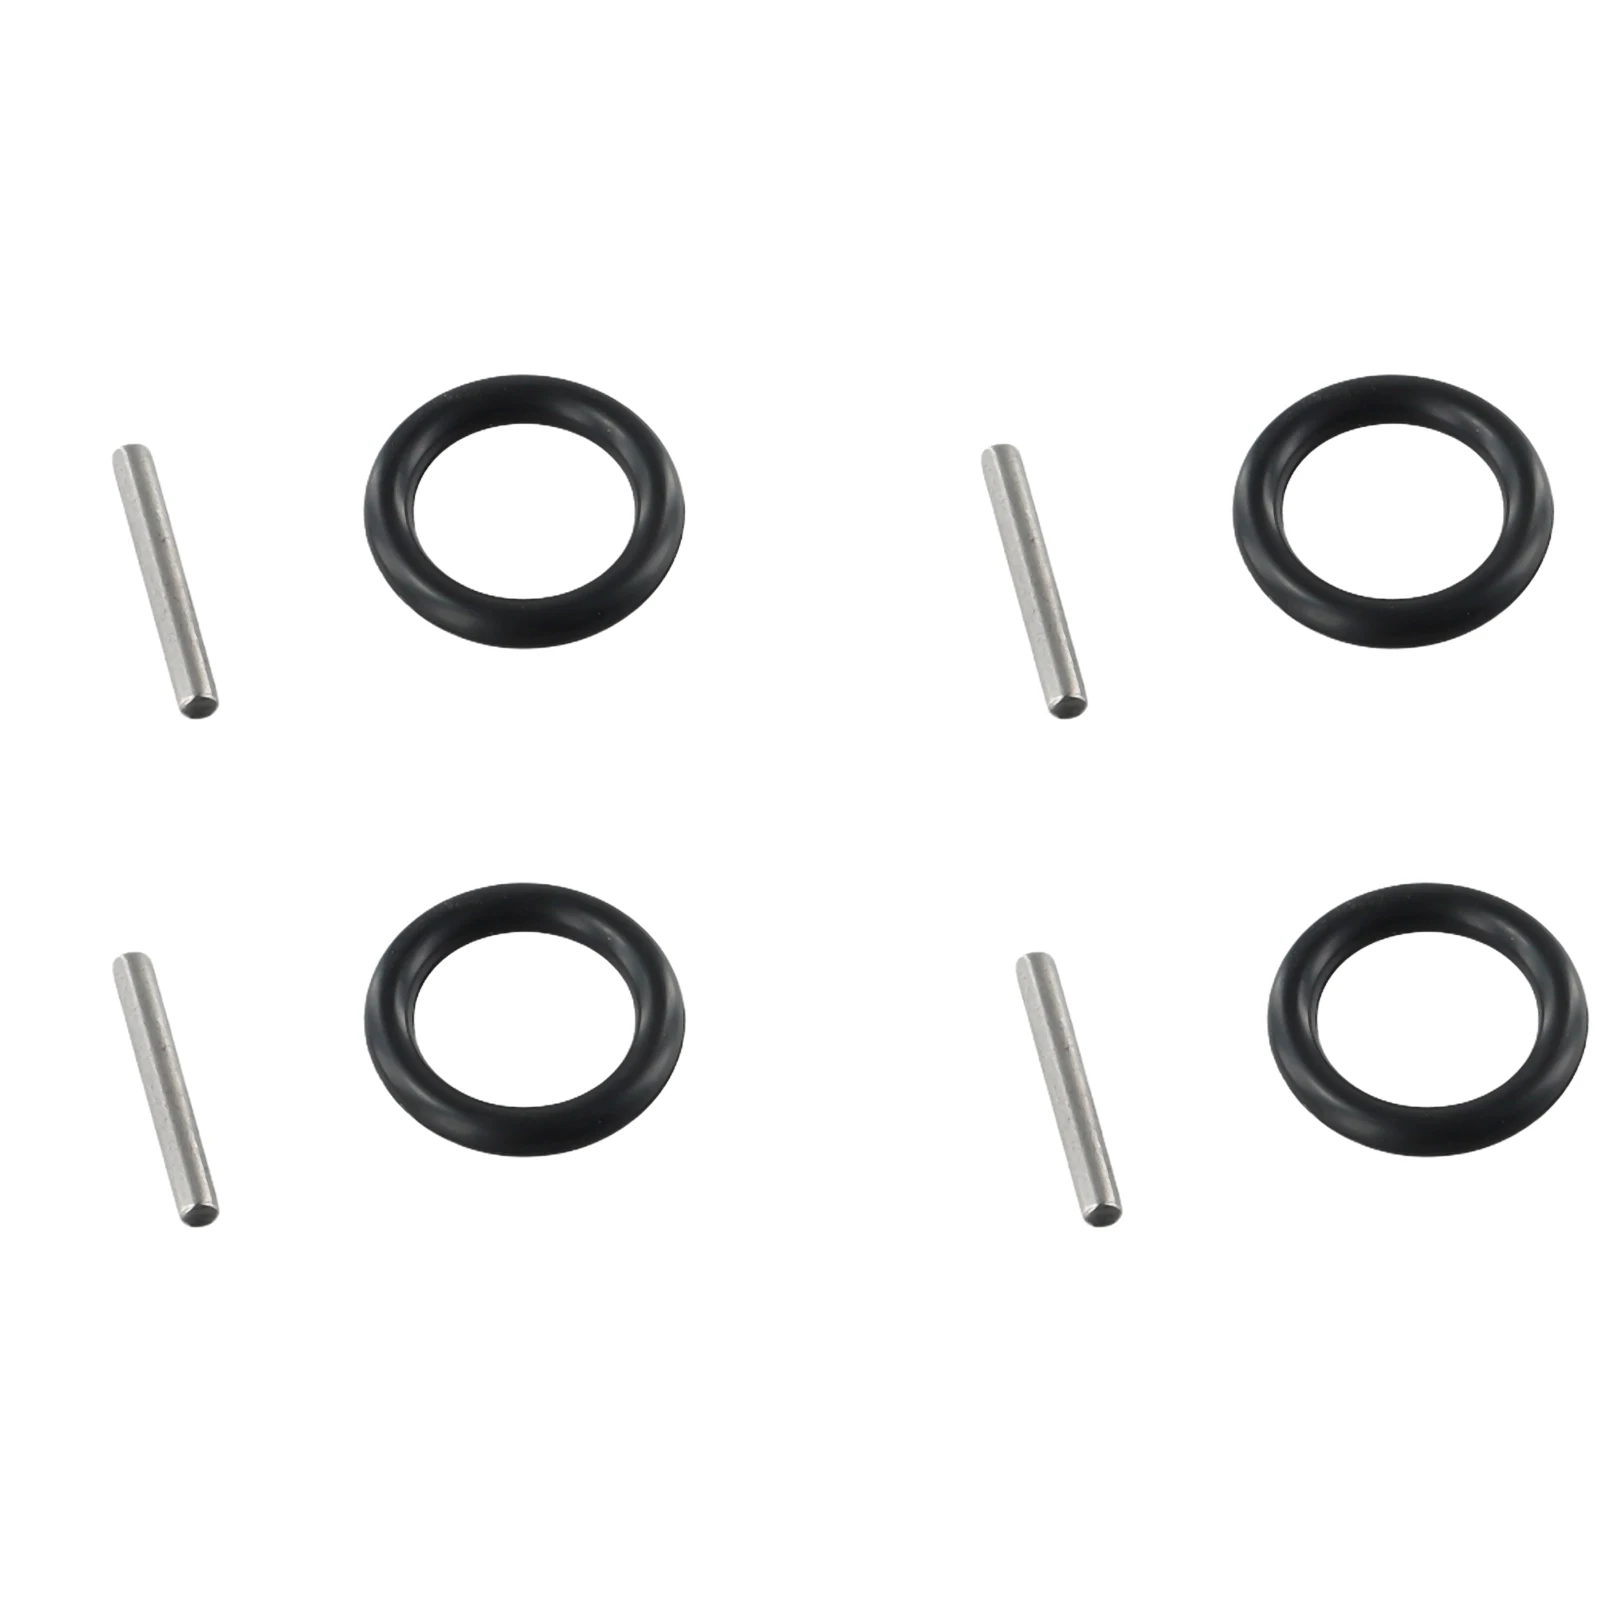 Kit di chiavi a bussola esagonali per chiavi a percussione elettriche da 4 pezzi 17-22mm adatto per chiavi elettriche a corrente alternata Set di chiavi a bussola durevoli